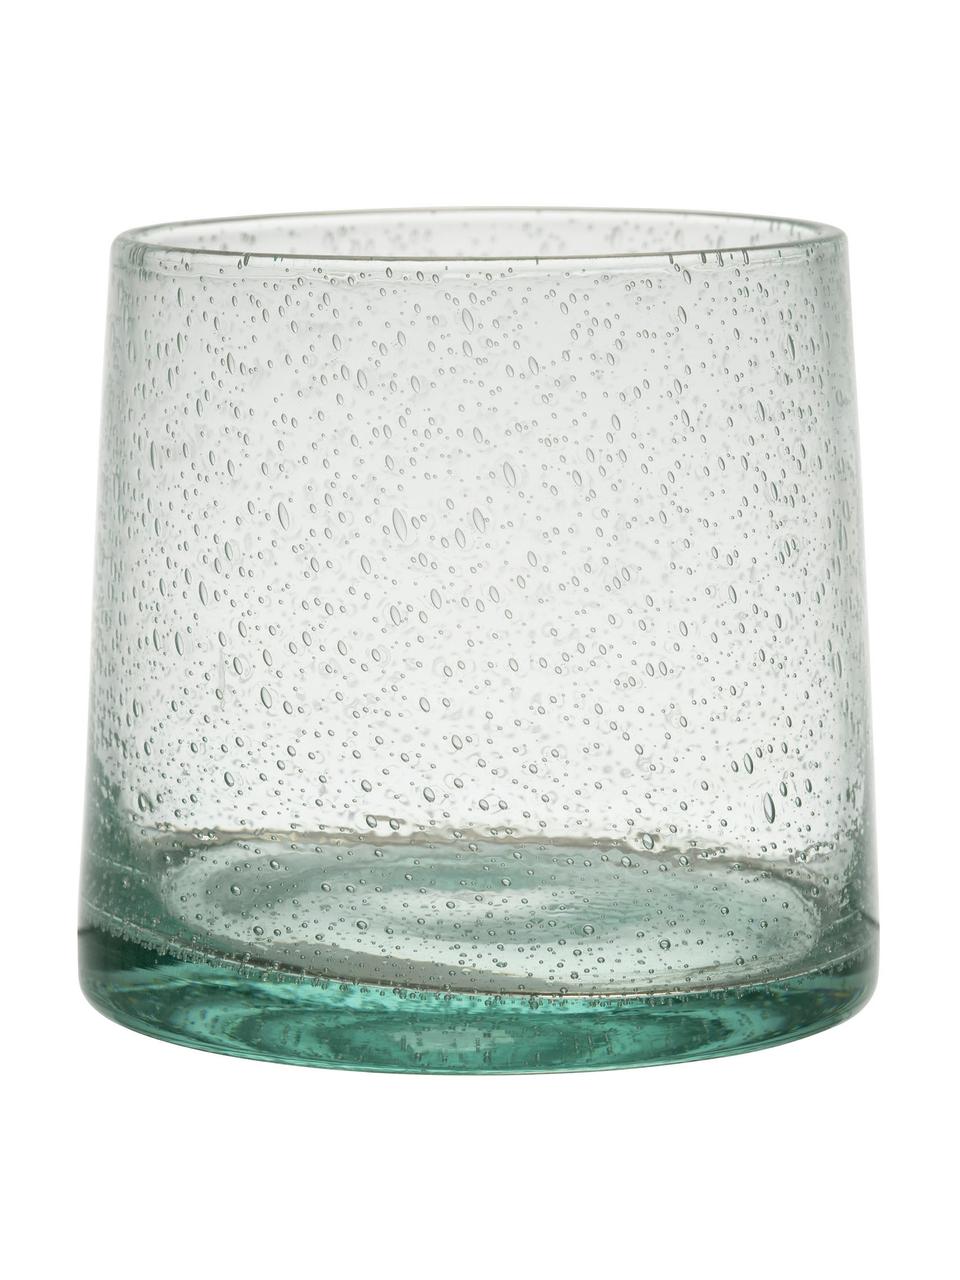 Bicchiere acqua in vetro soffiato con bolle d'aria Lorea 6 pz, Vetro, Verde, Ø 7 x Alt. 8 cm, 200 ml